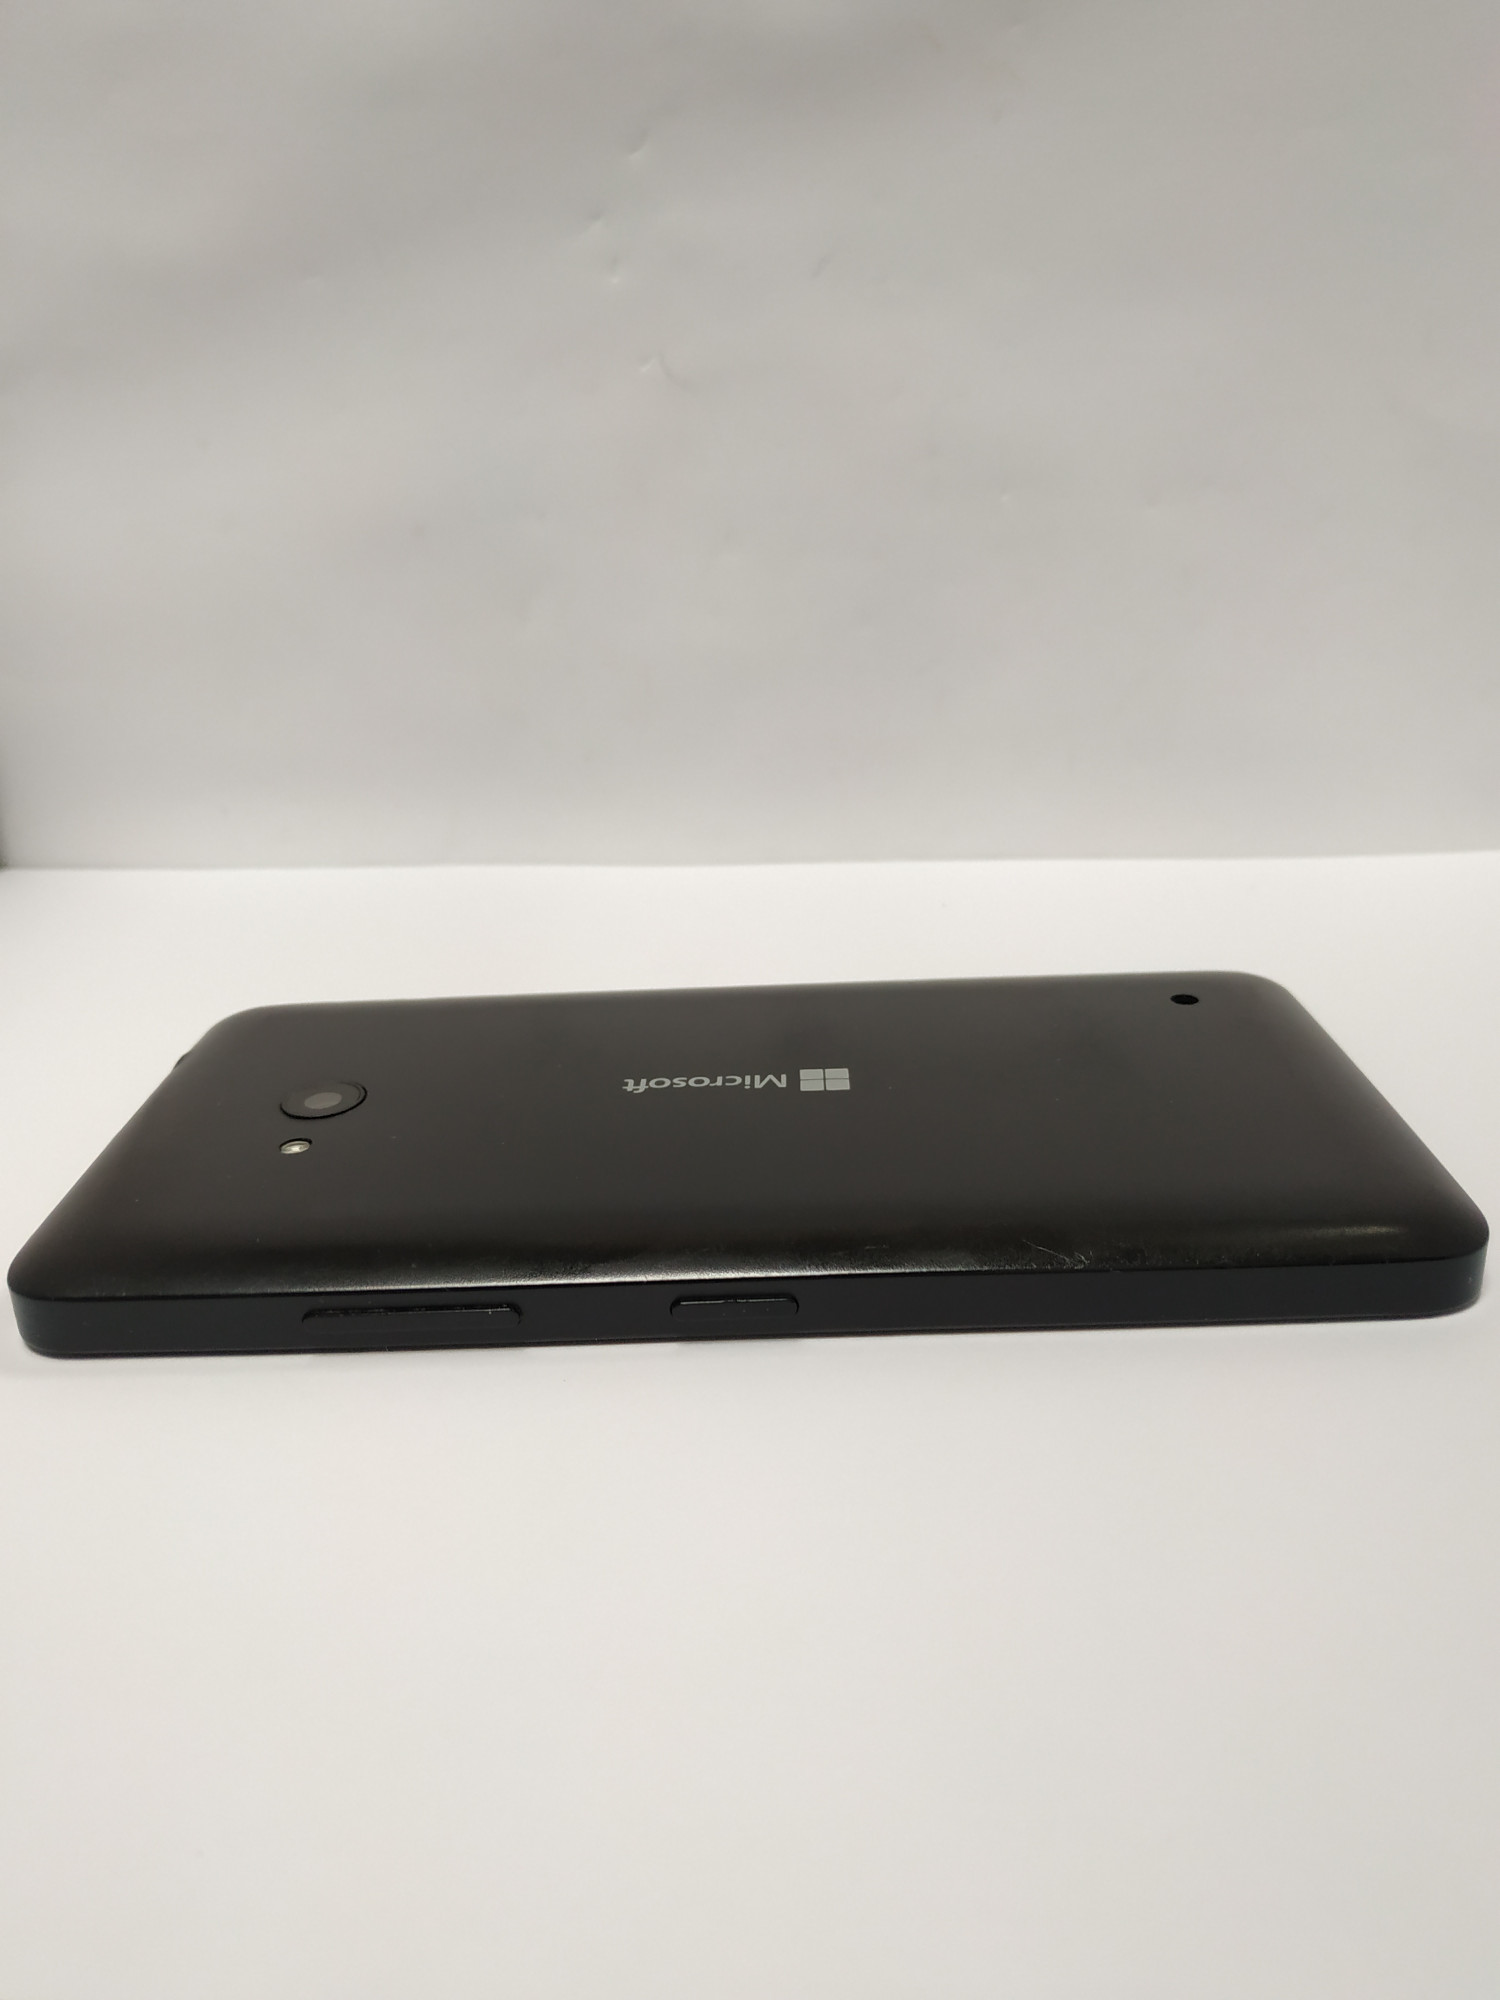 Microsoft Lumia 640 LTE (RM-1072, RM-1073) 1/8Gb  3